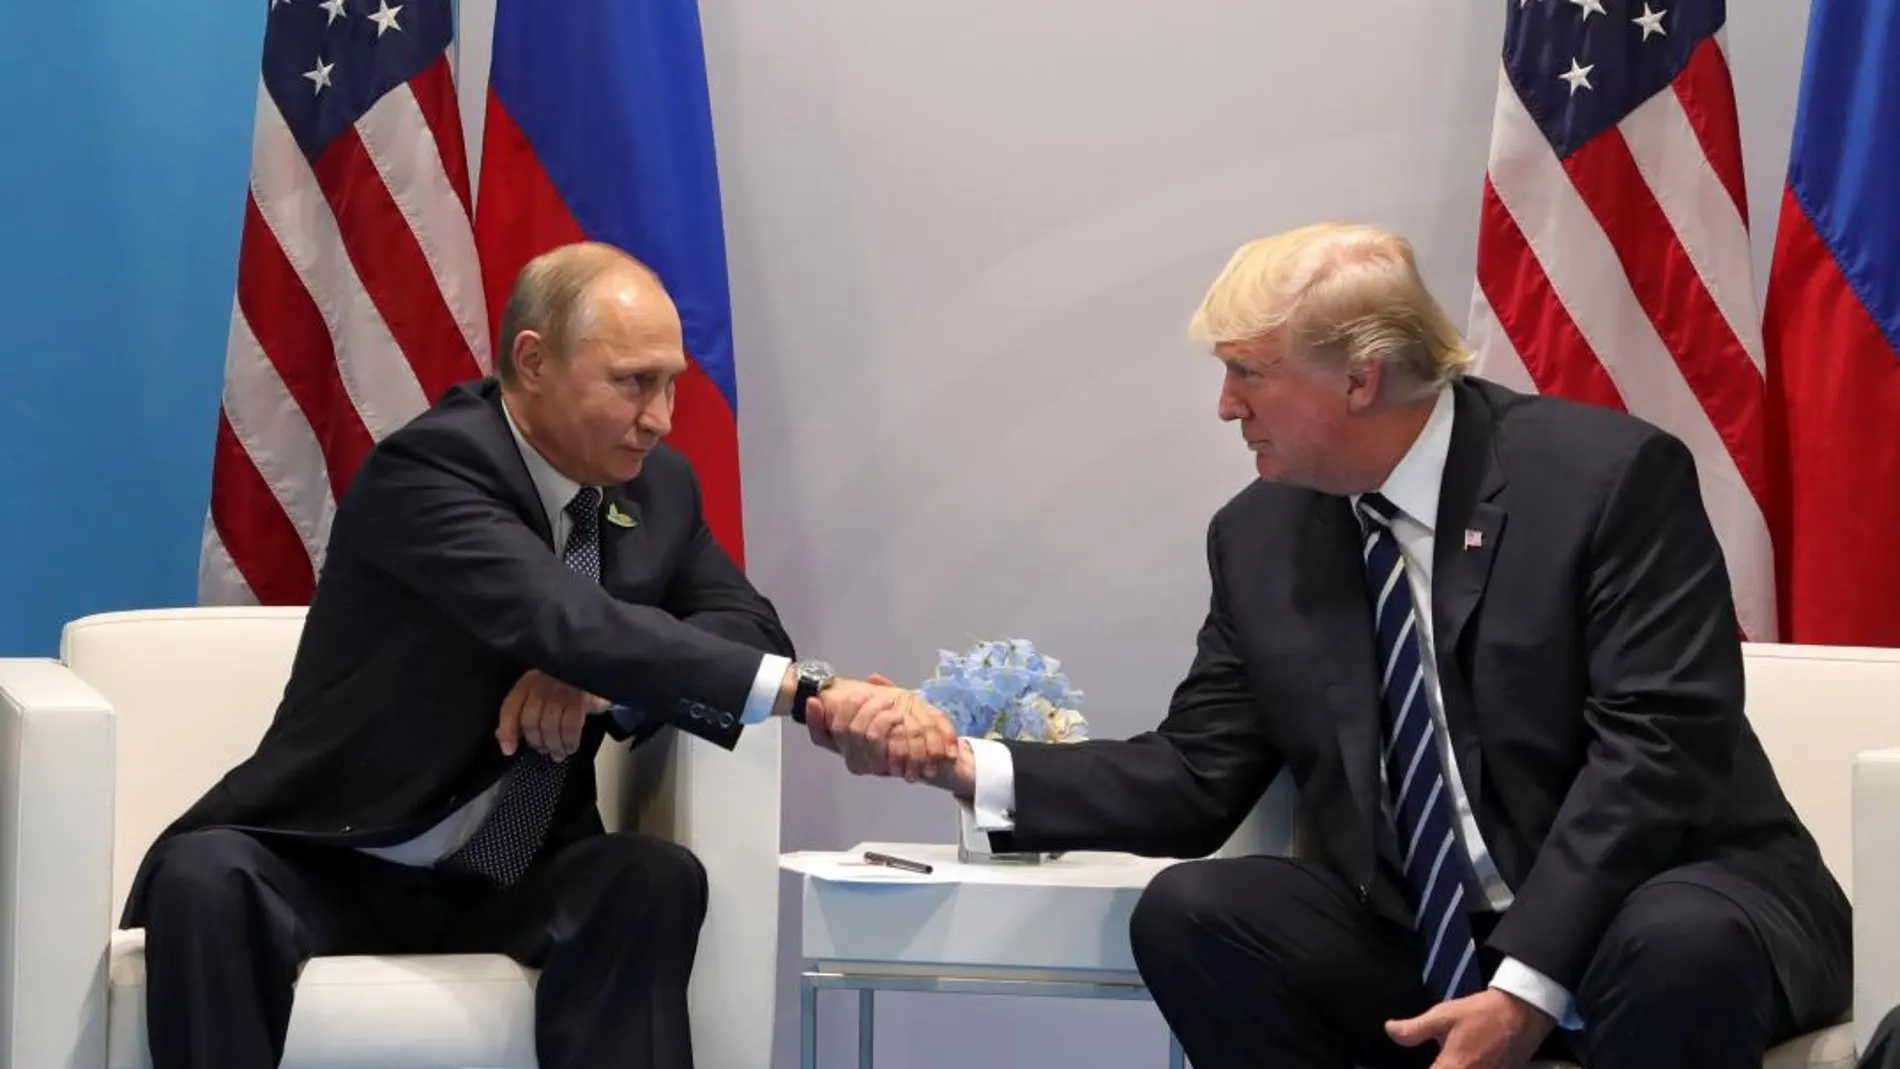 Vladímir Putin y Donald Trump el pasado año en la cumbre del G20 en Hamburgo (Alemania). EFE/Michael Klimentyev / Sputnik / Kremlin pool